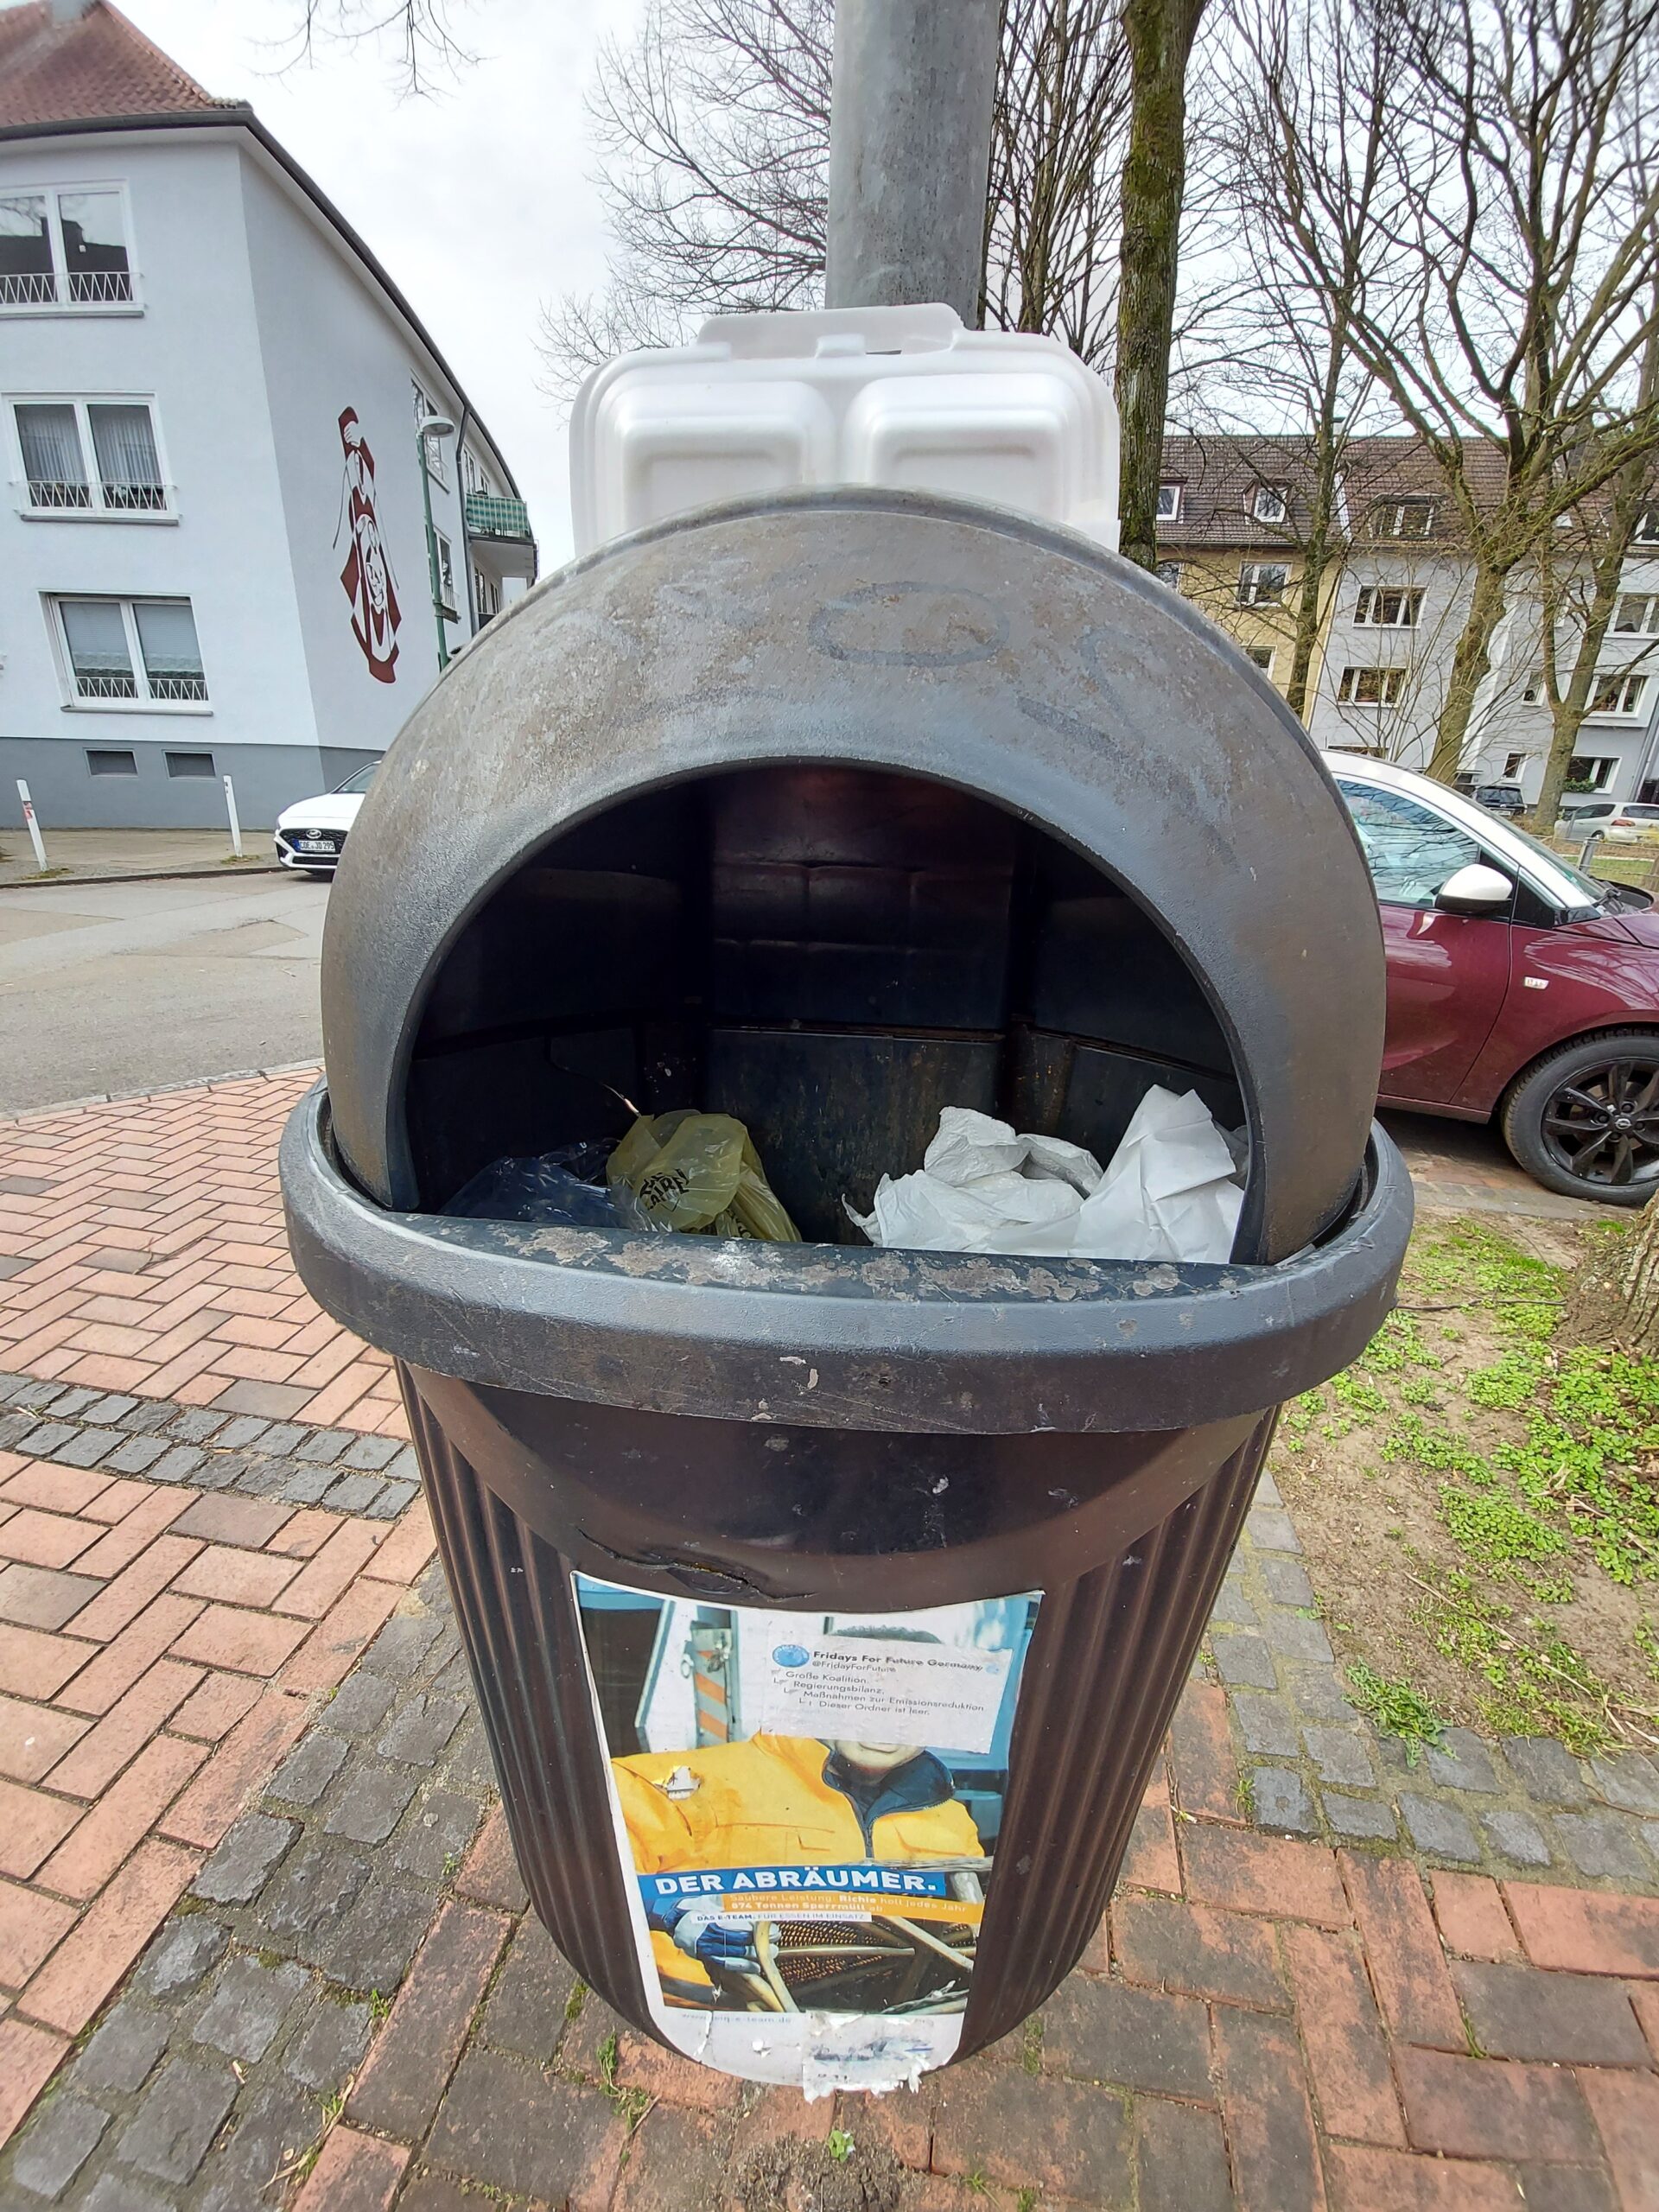 Beispiel-Foto zum Thema #cityzoo.  Eine Take-Away Schachtel steht auf einem Mülleimer im Stadtraum. Es sieht aus als wäre die Schachtel die Augen eines Frosches mit offenem Mund. Im Hintergrund 2 Häuser und ein rotes parkendes Auto